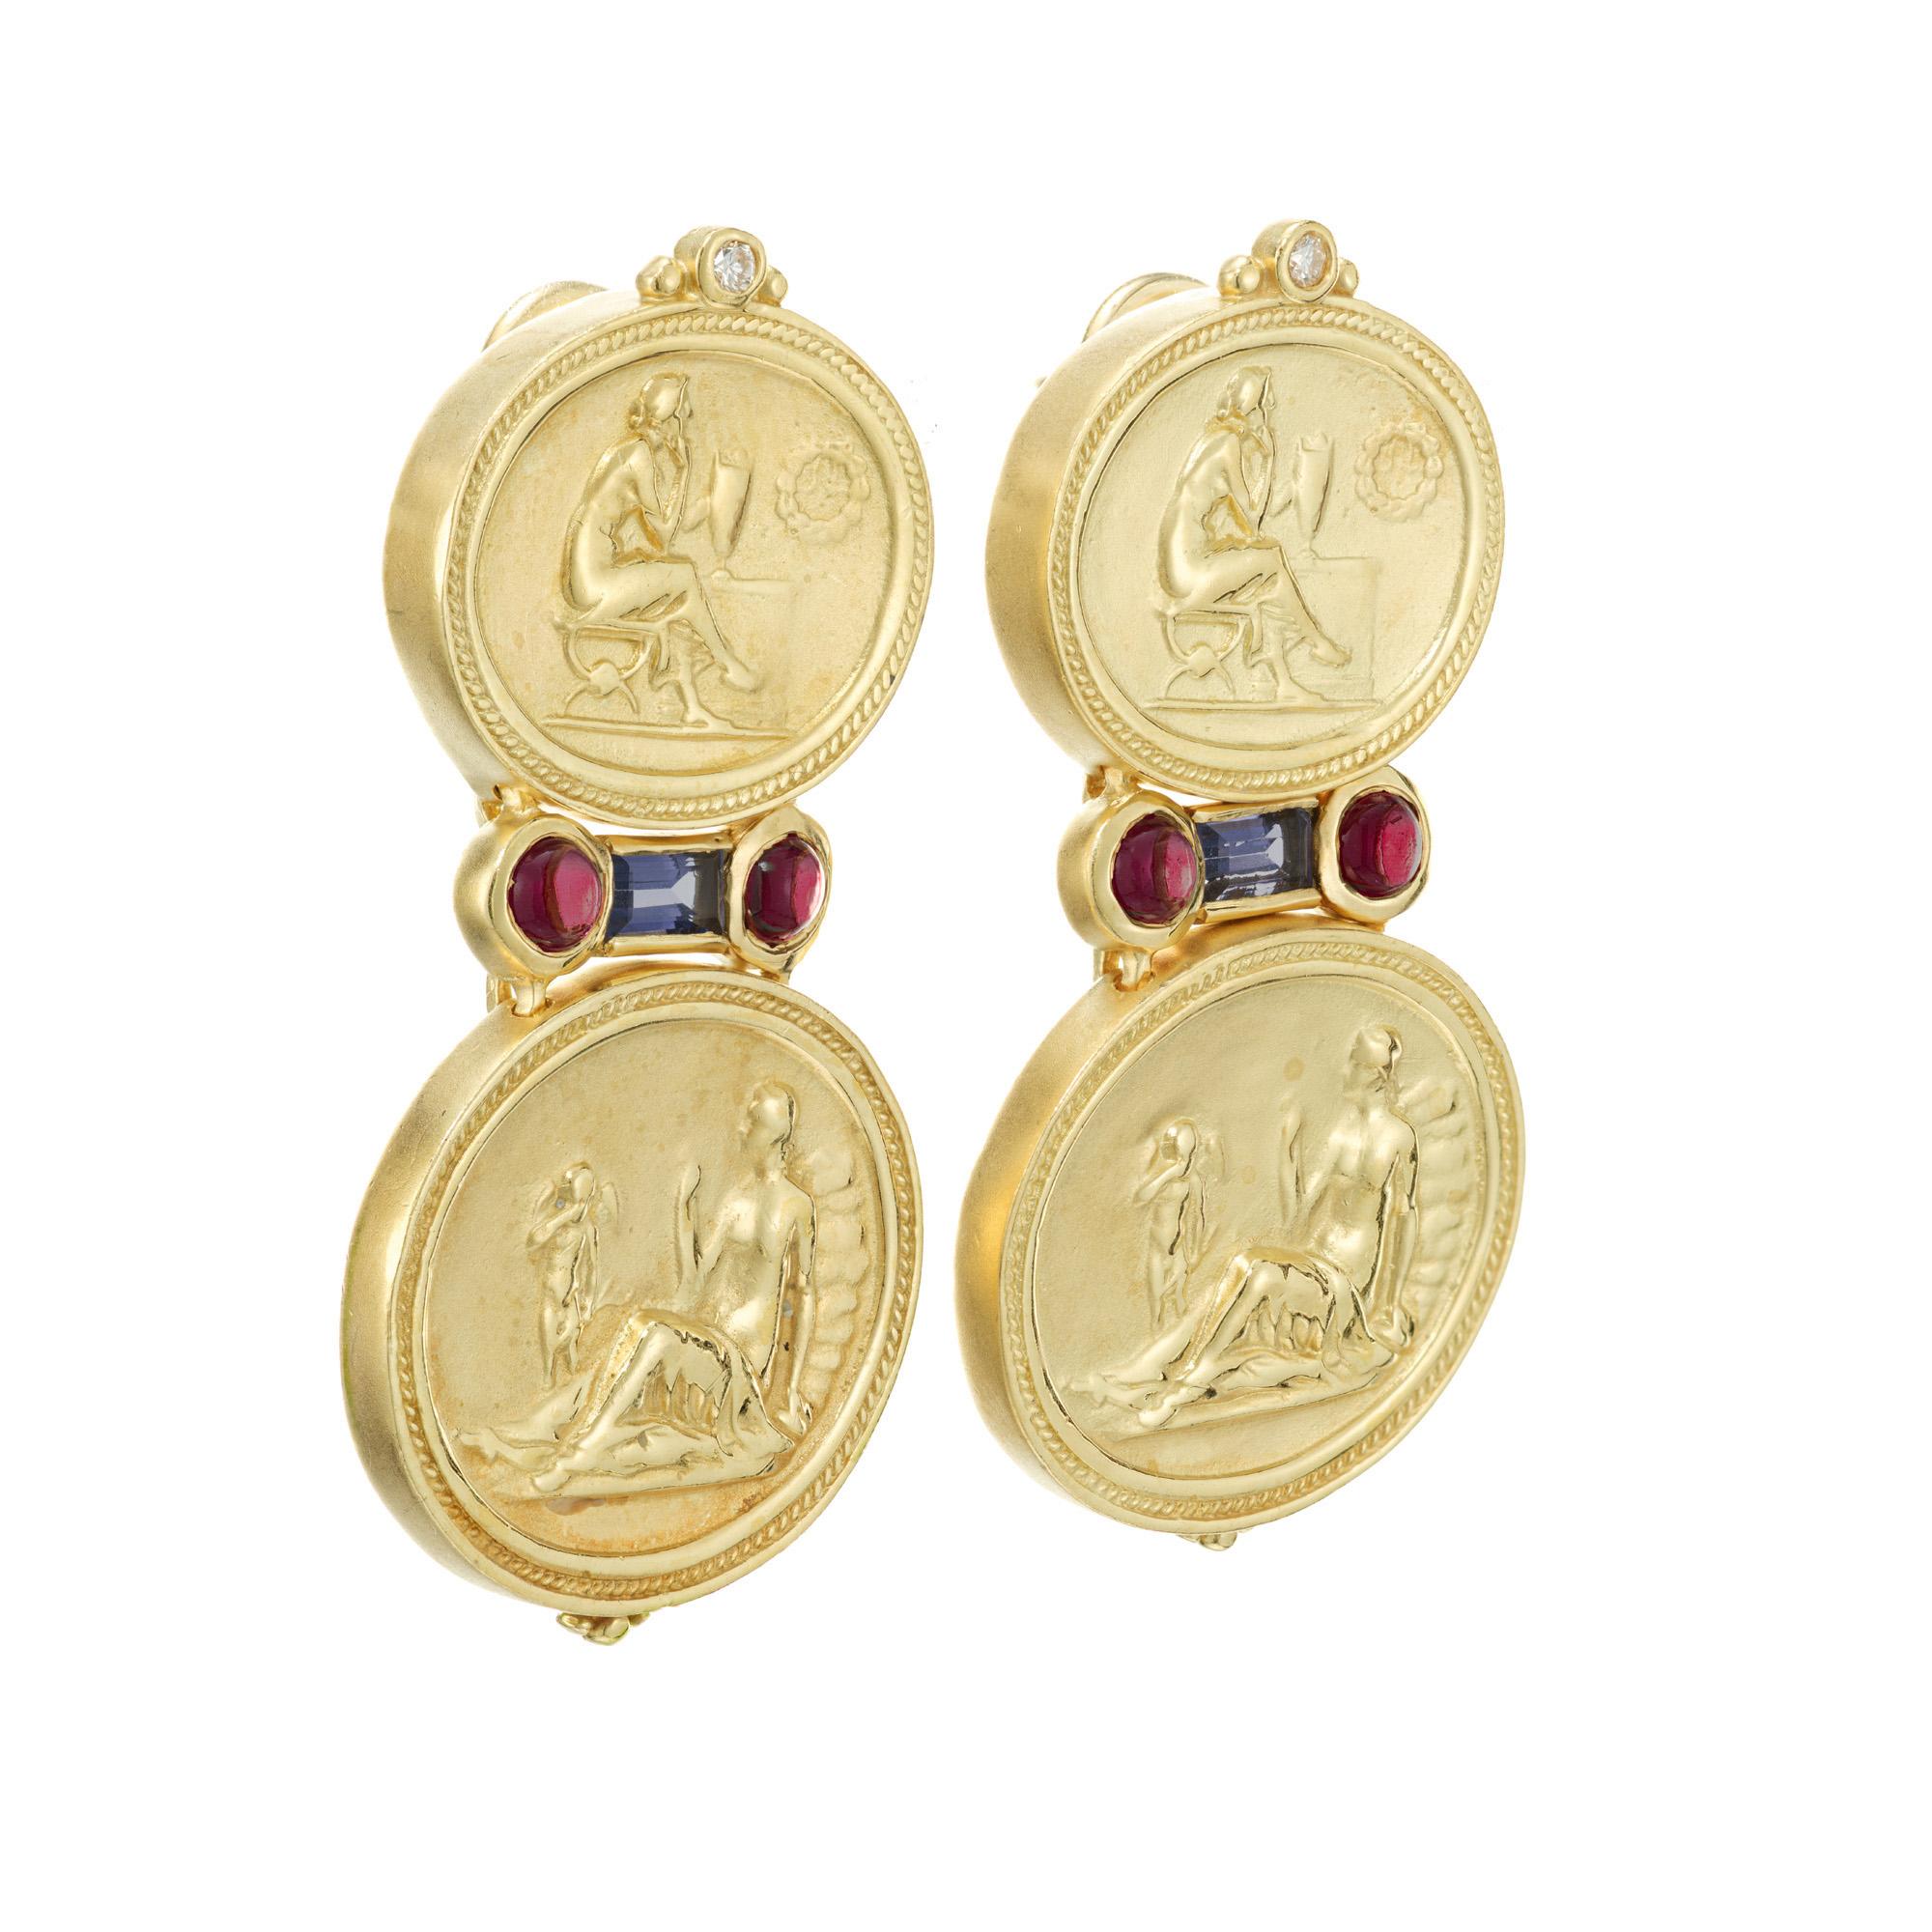 Boucles d'oreilles pendantes en SeidenGang à la texture détaillée. Les disques ovales en or jaune 18 carats sont rehaussés de 4 grenats cabochons rouges rosés, de 2 diamants ronds et de 2 Iolites baguettes bleues violacées. 

4 grenats cabochons